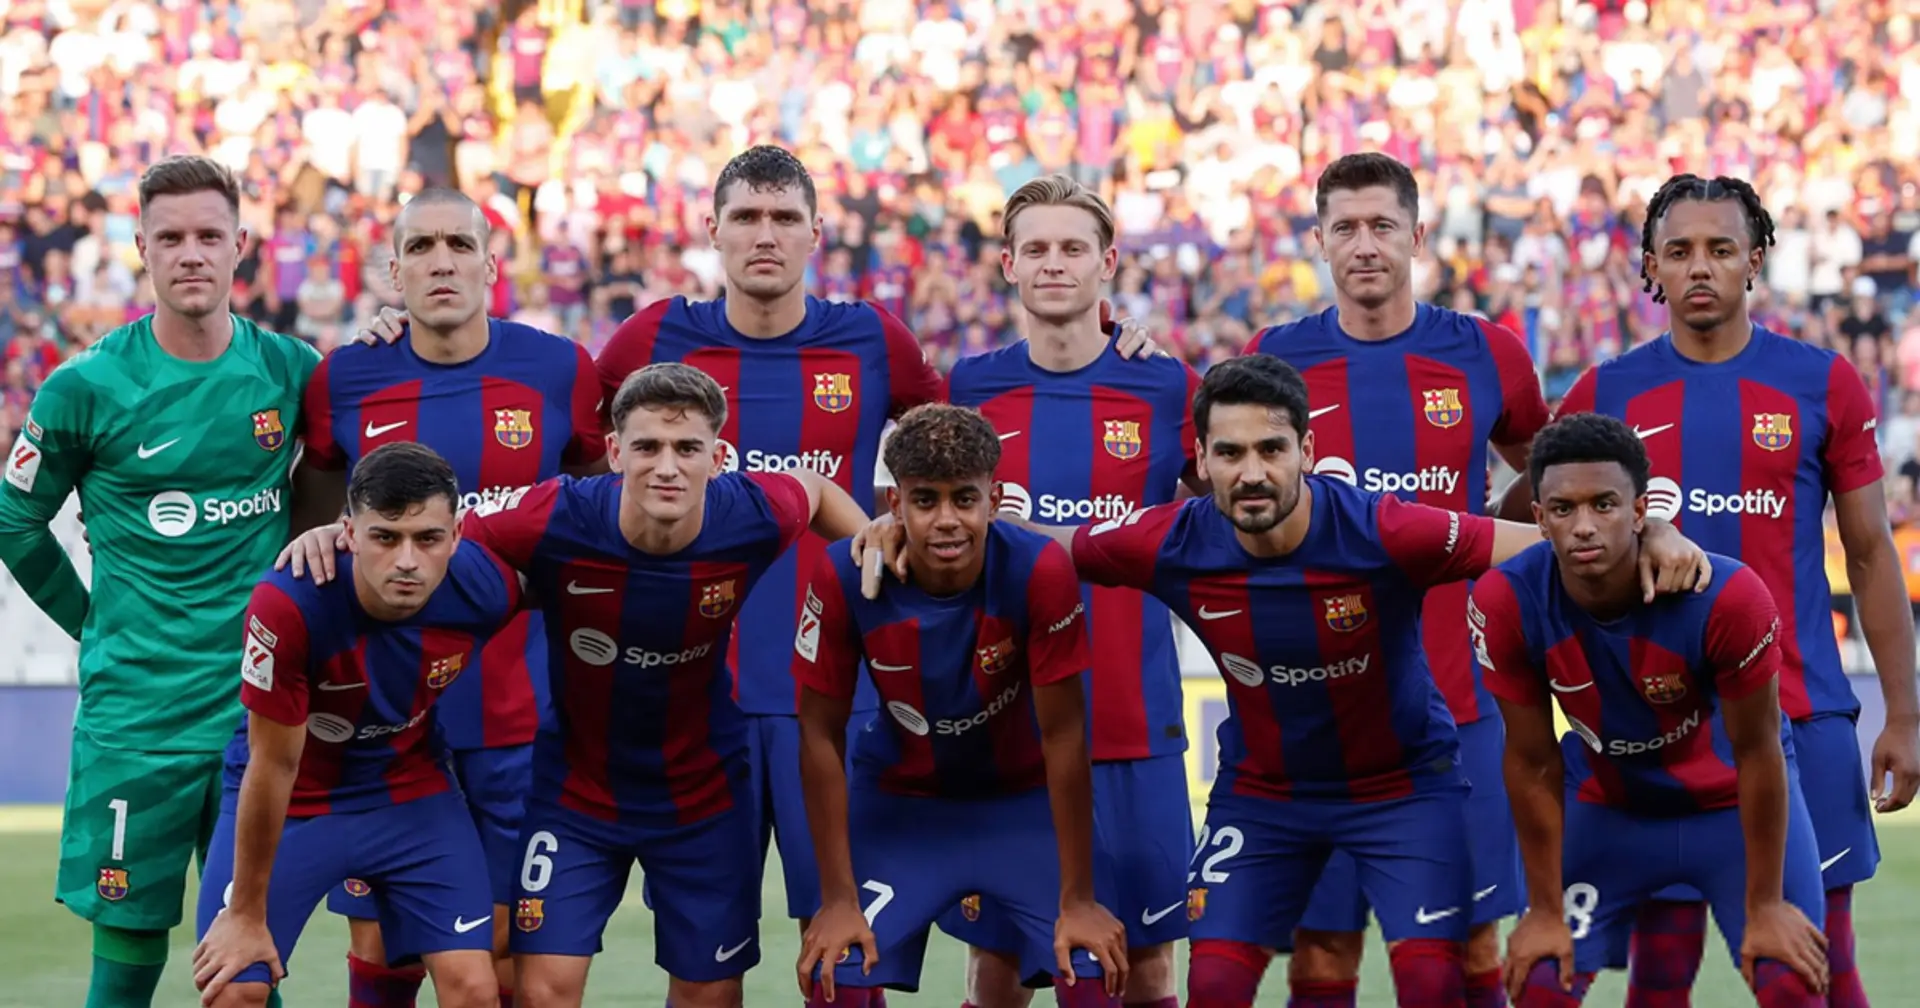 Barcelona's €80 million star set for starting role against PSG